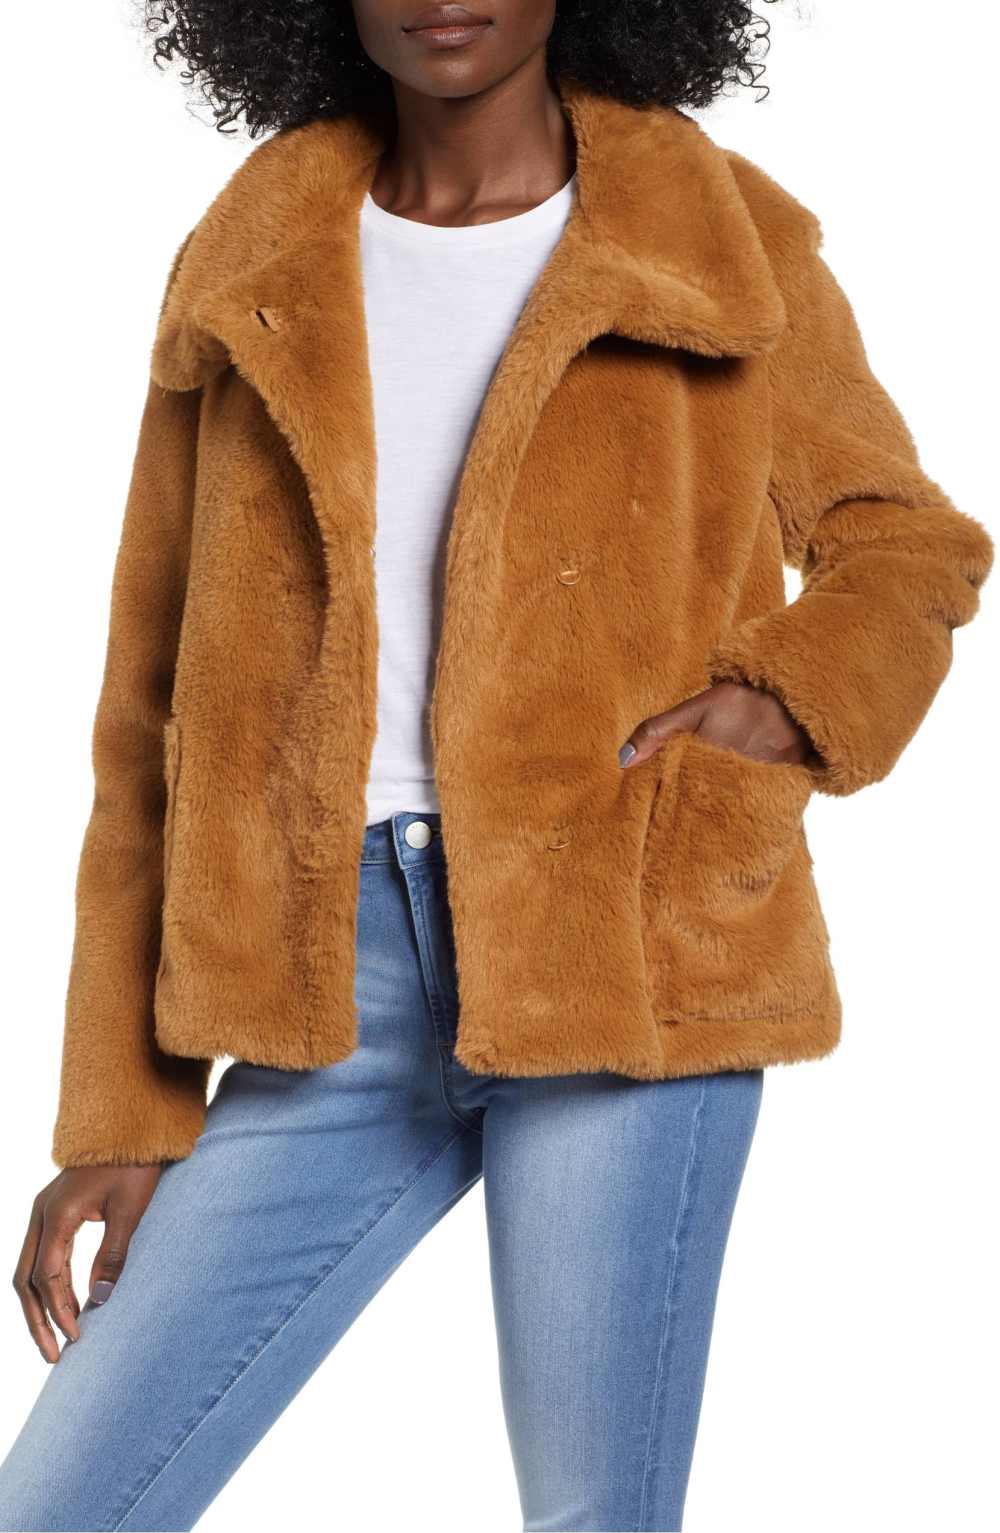 Leith Fur-Fect Faux Fur Jacket